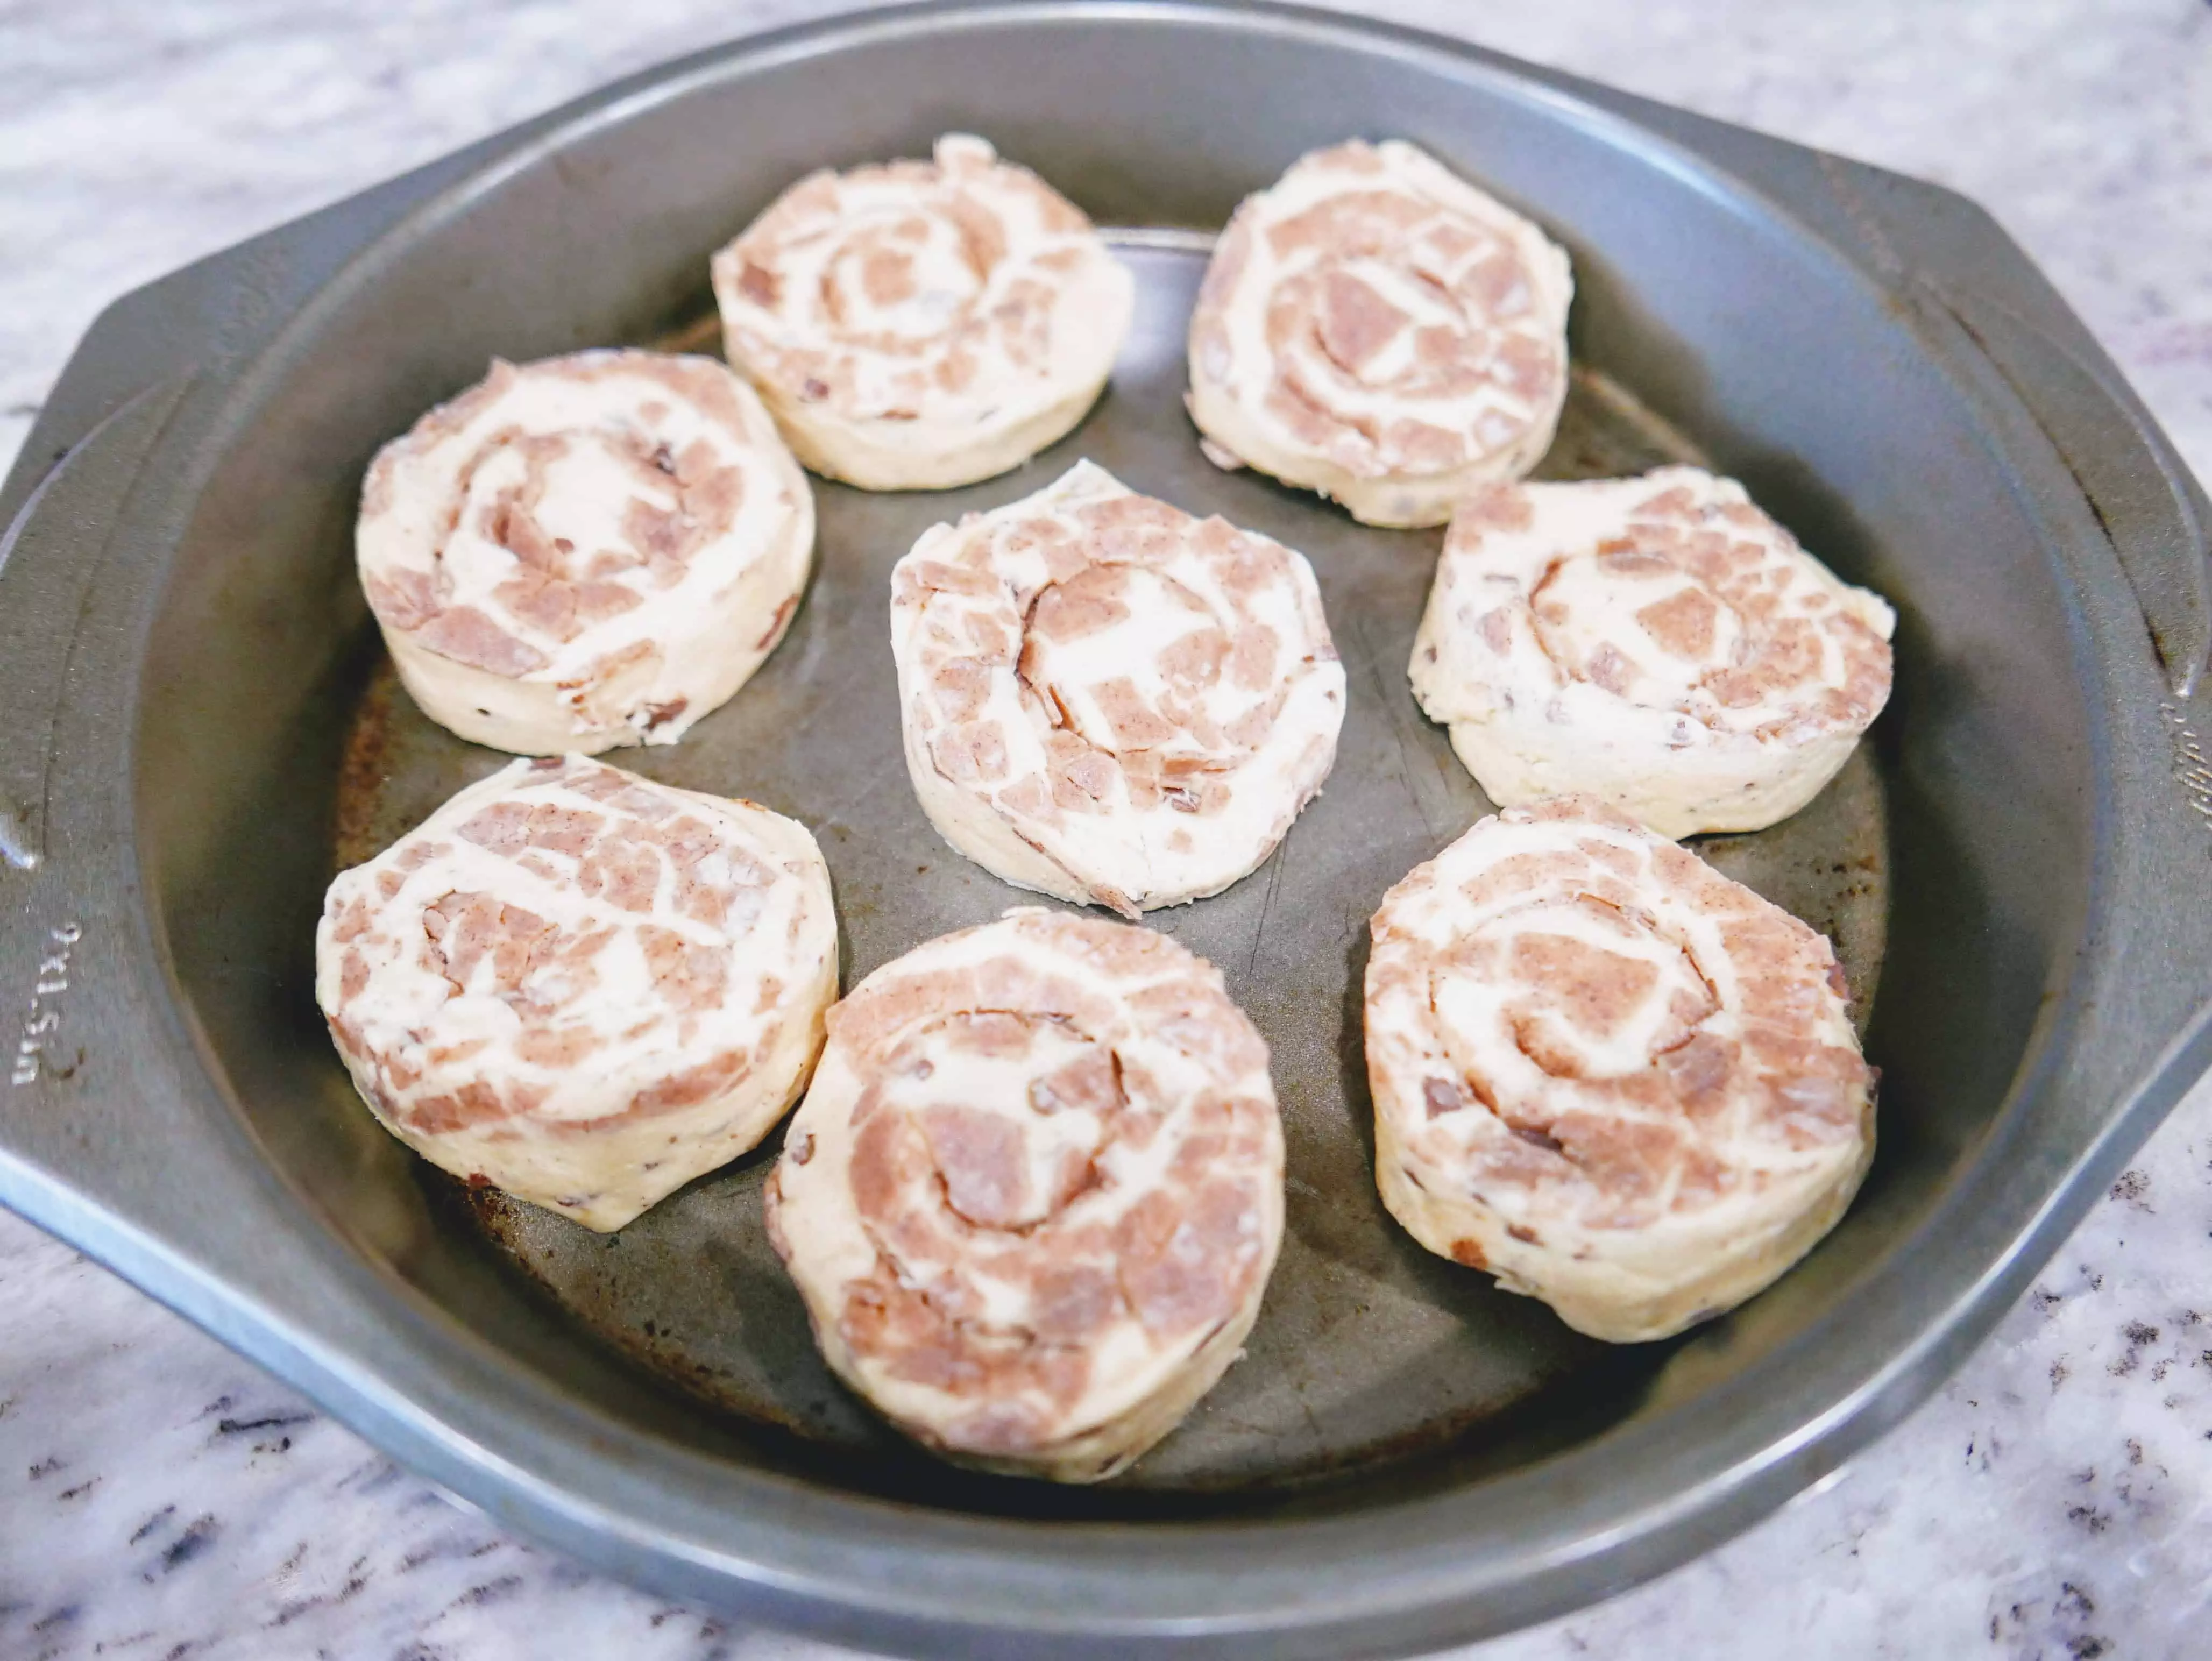 uncooked cinnamon rolls in pan